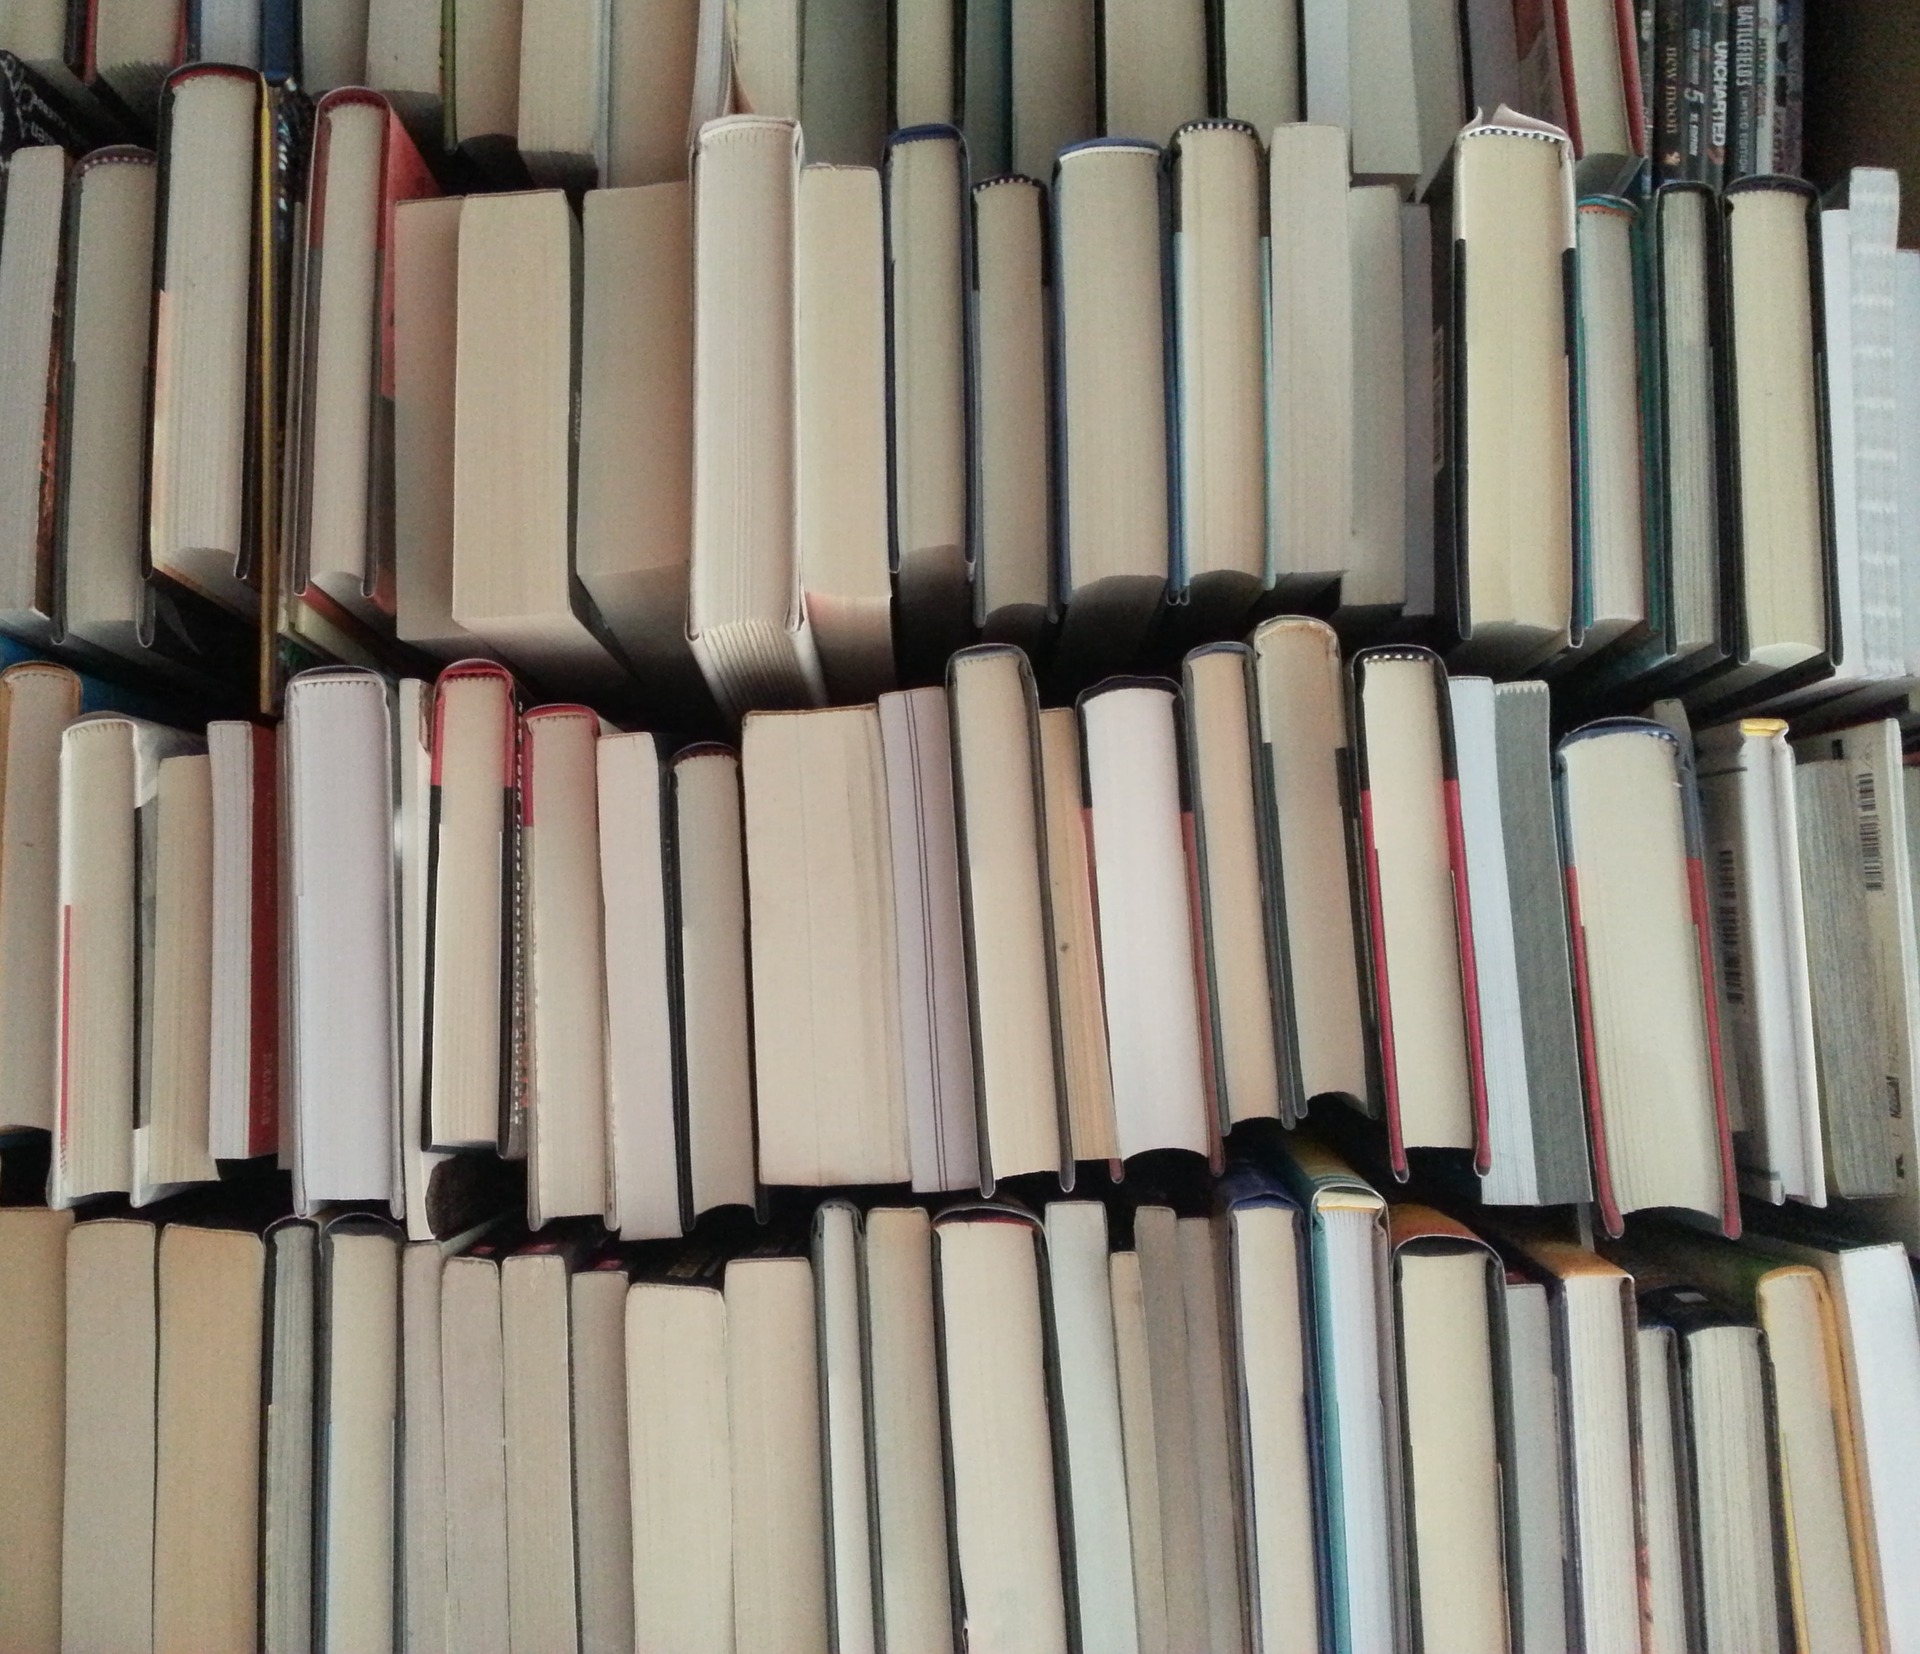 She a lot of books. Складывание книг в стопку красивую. Картинка книг сложенных на полке. Как красиво сложить книги на полке.